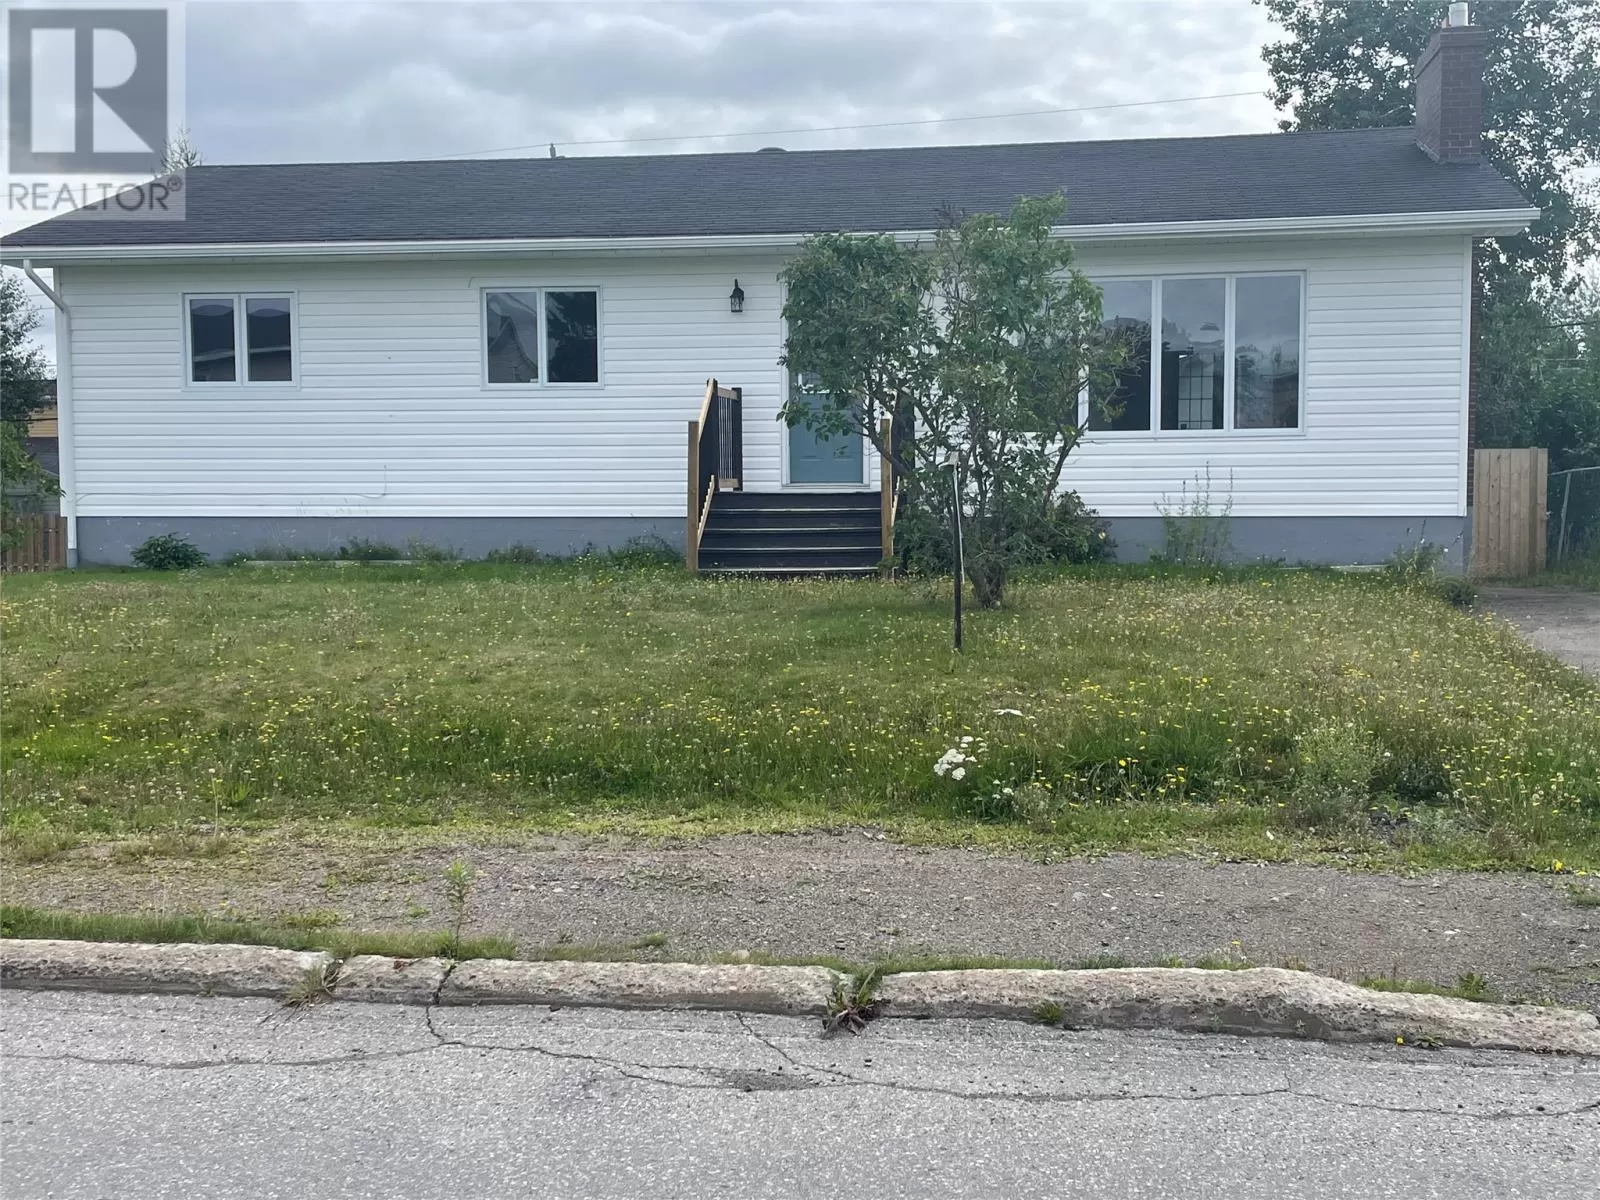 House for rent: 33 Pine Avenue, Lewisporte, Newfoundland & Labrador A0G 3A0